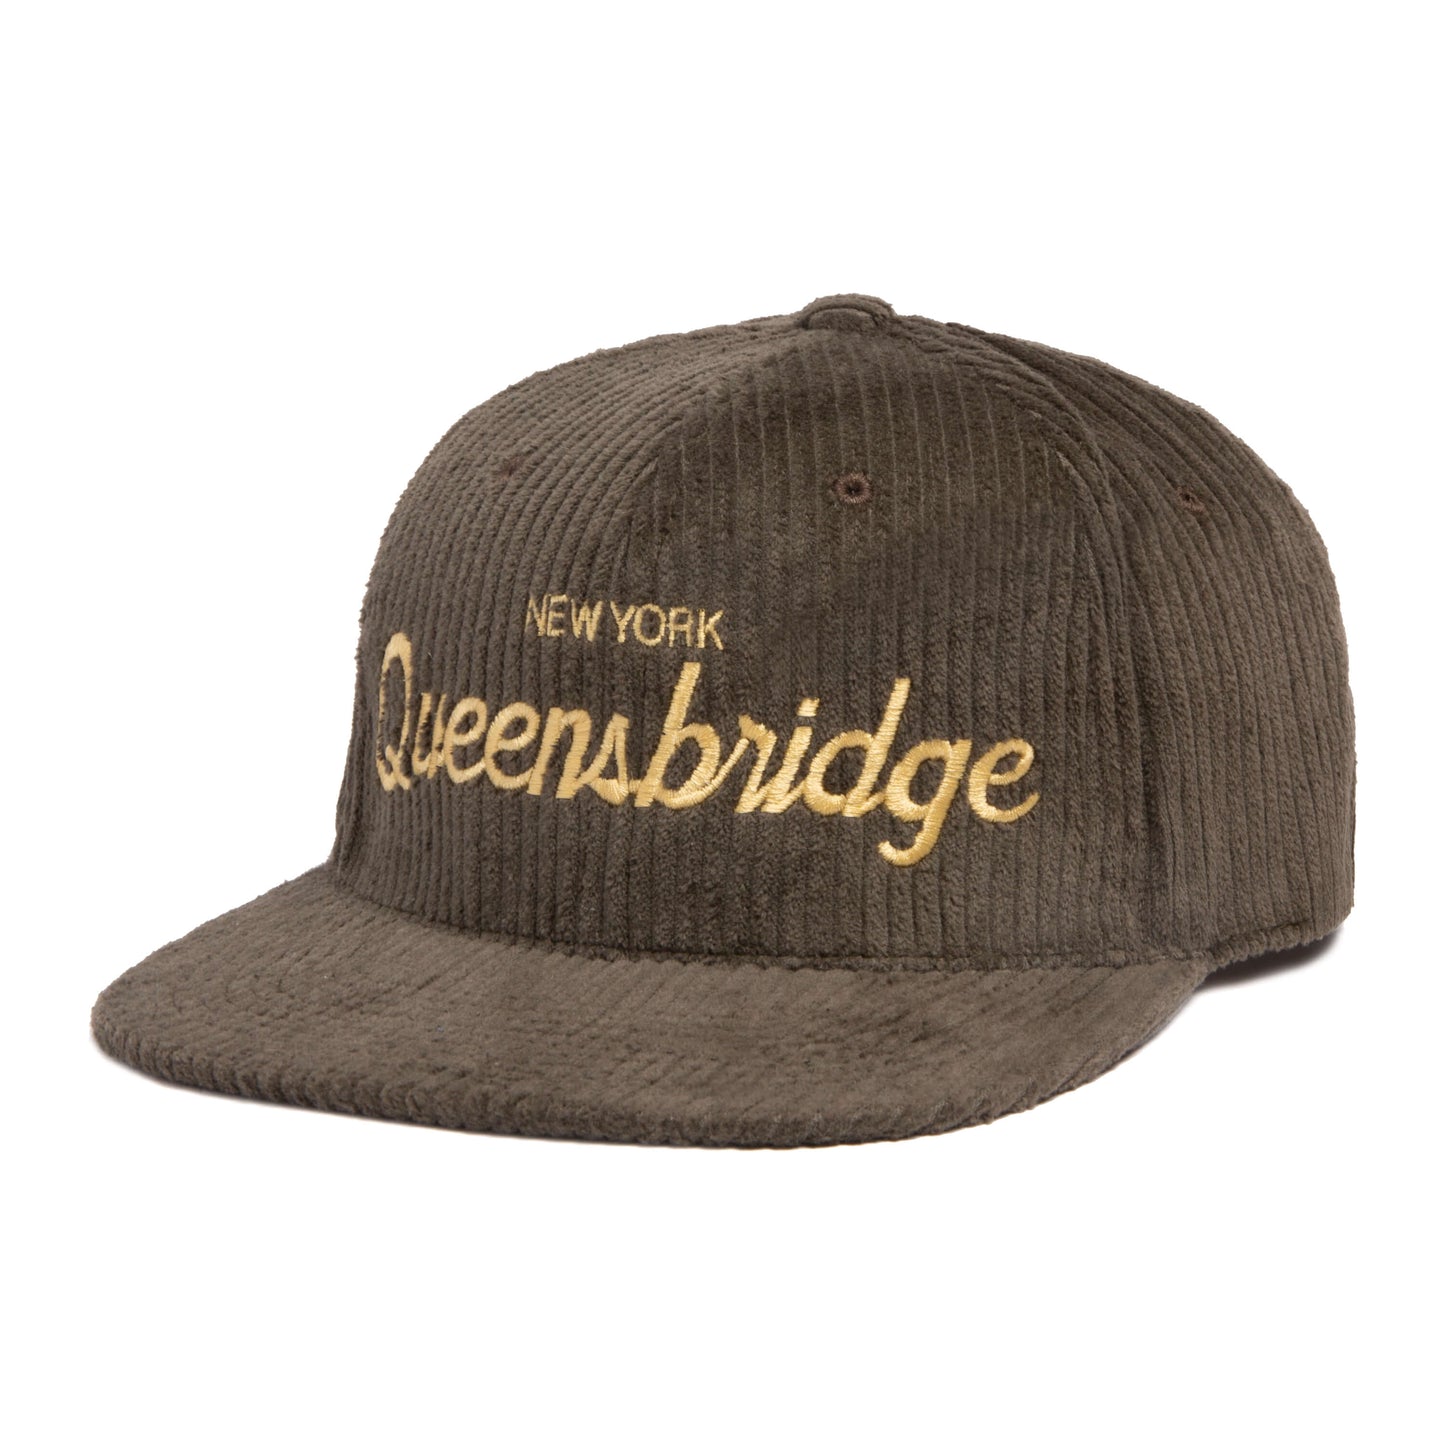 Queensbridge Corduroy Snapback Hat